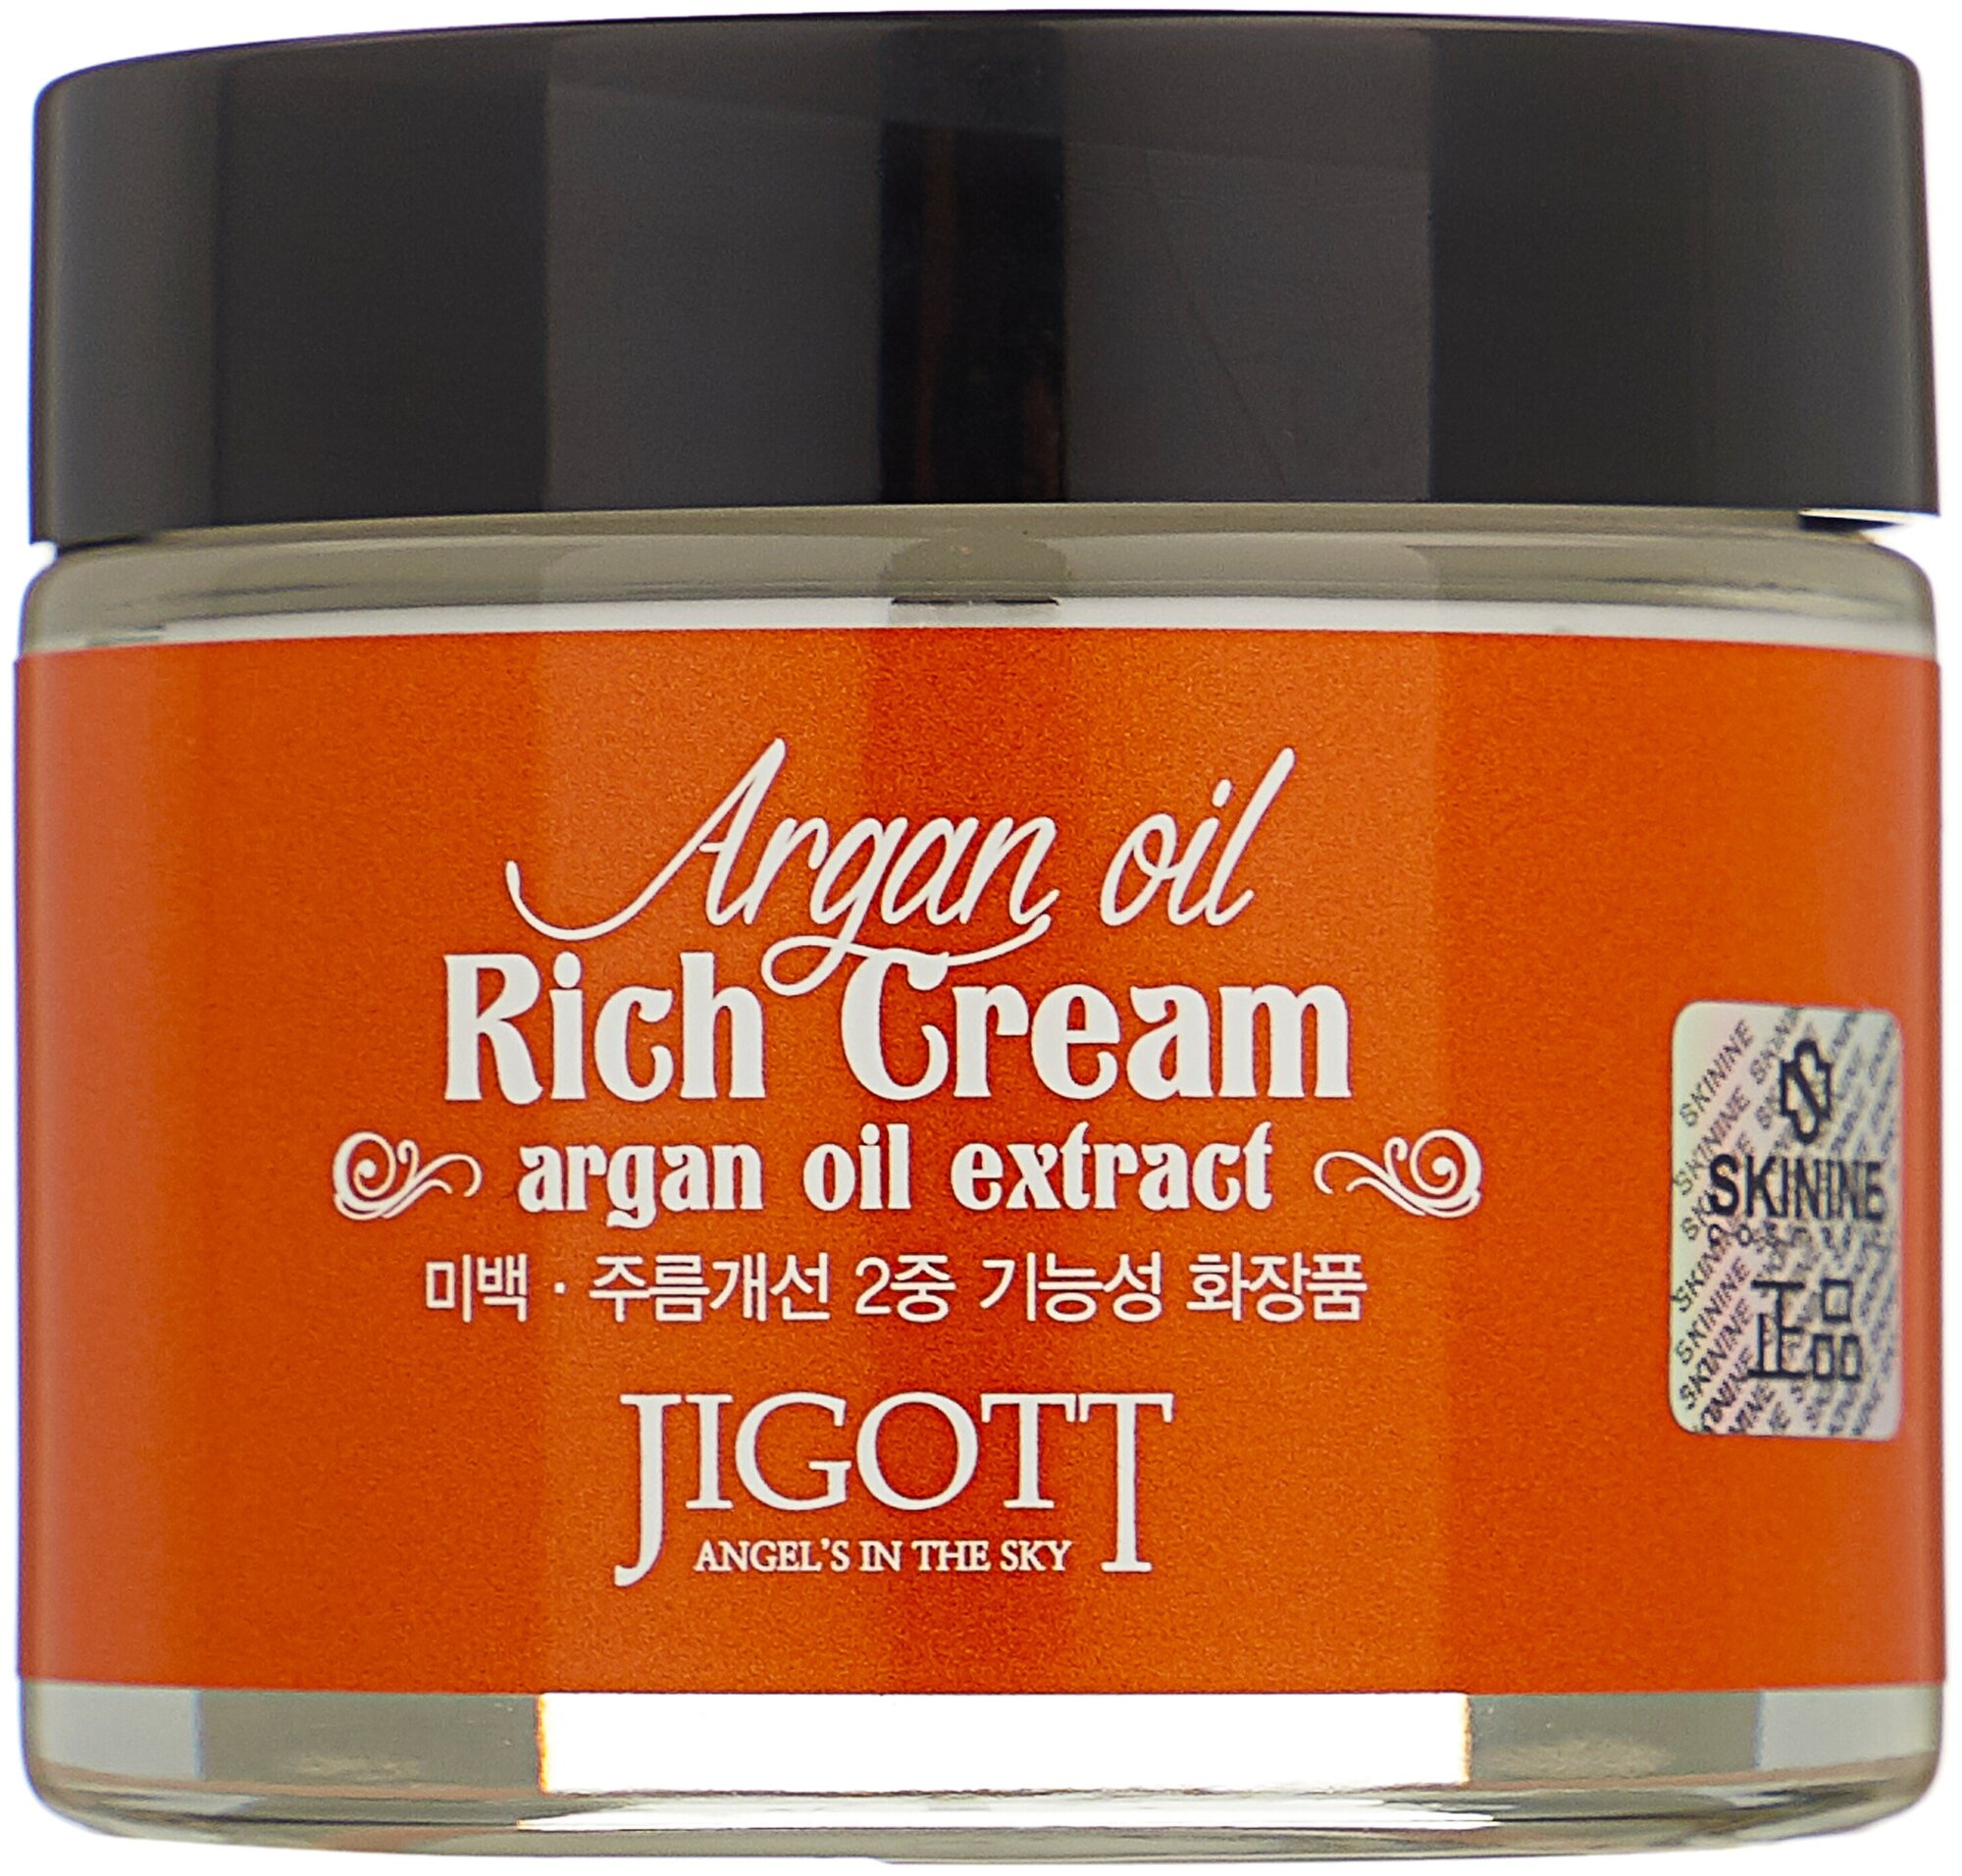 Jigott Насыщенный крем для лица с аргановым маслом Argan Oil Rich Cream